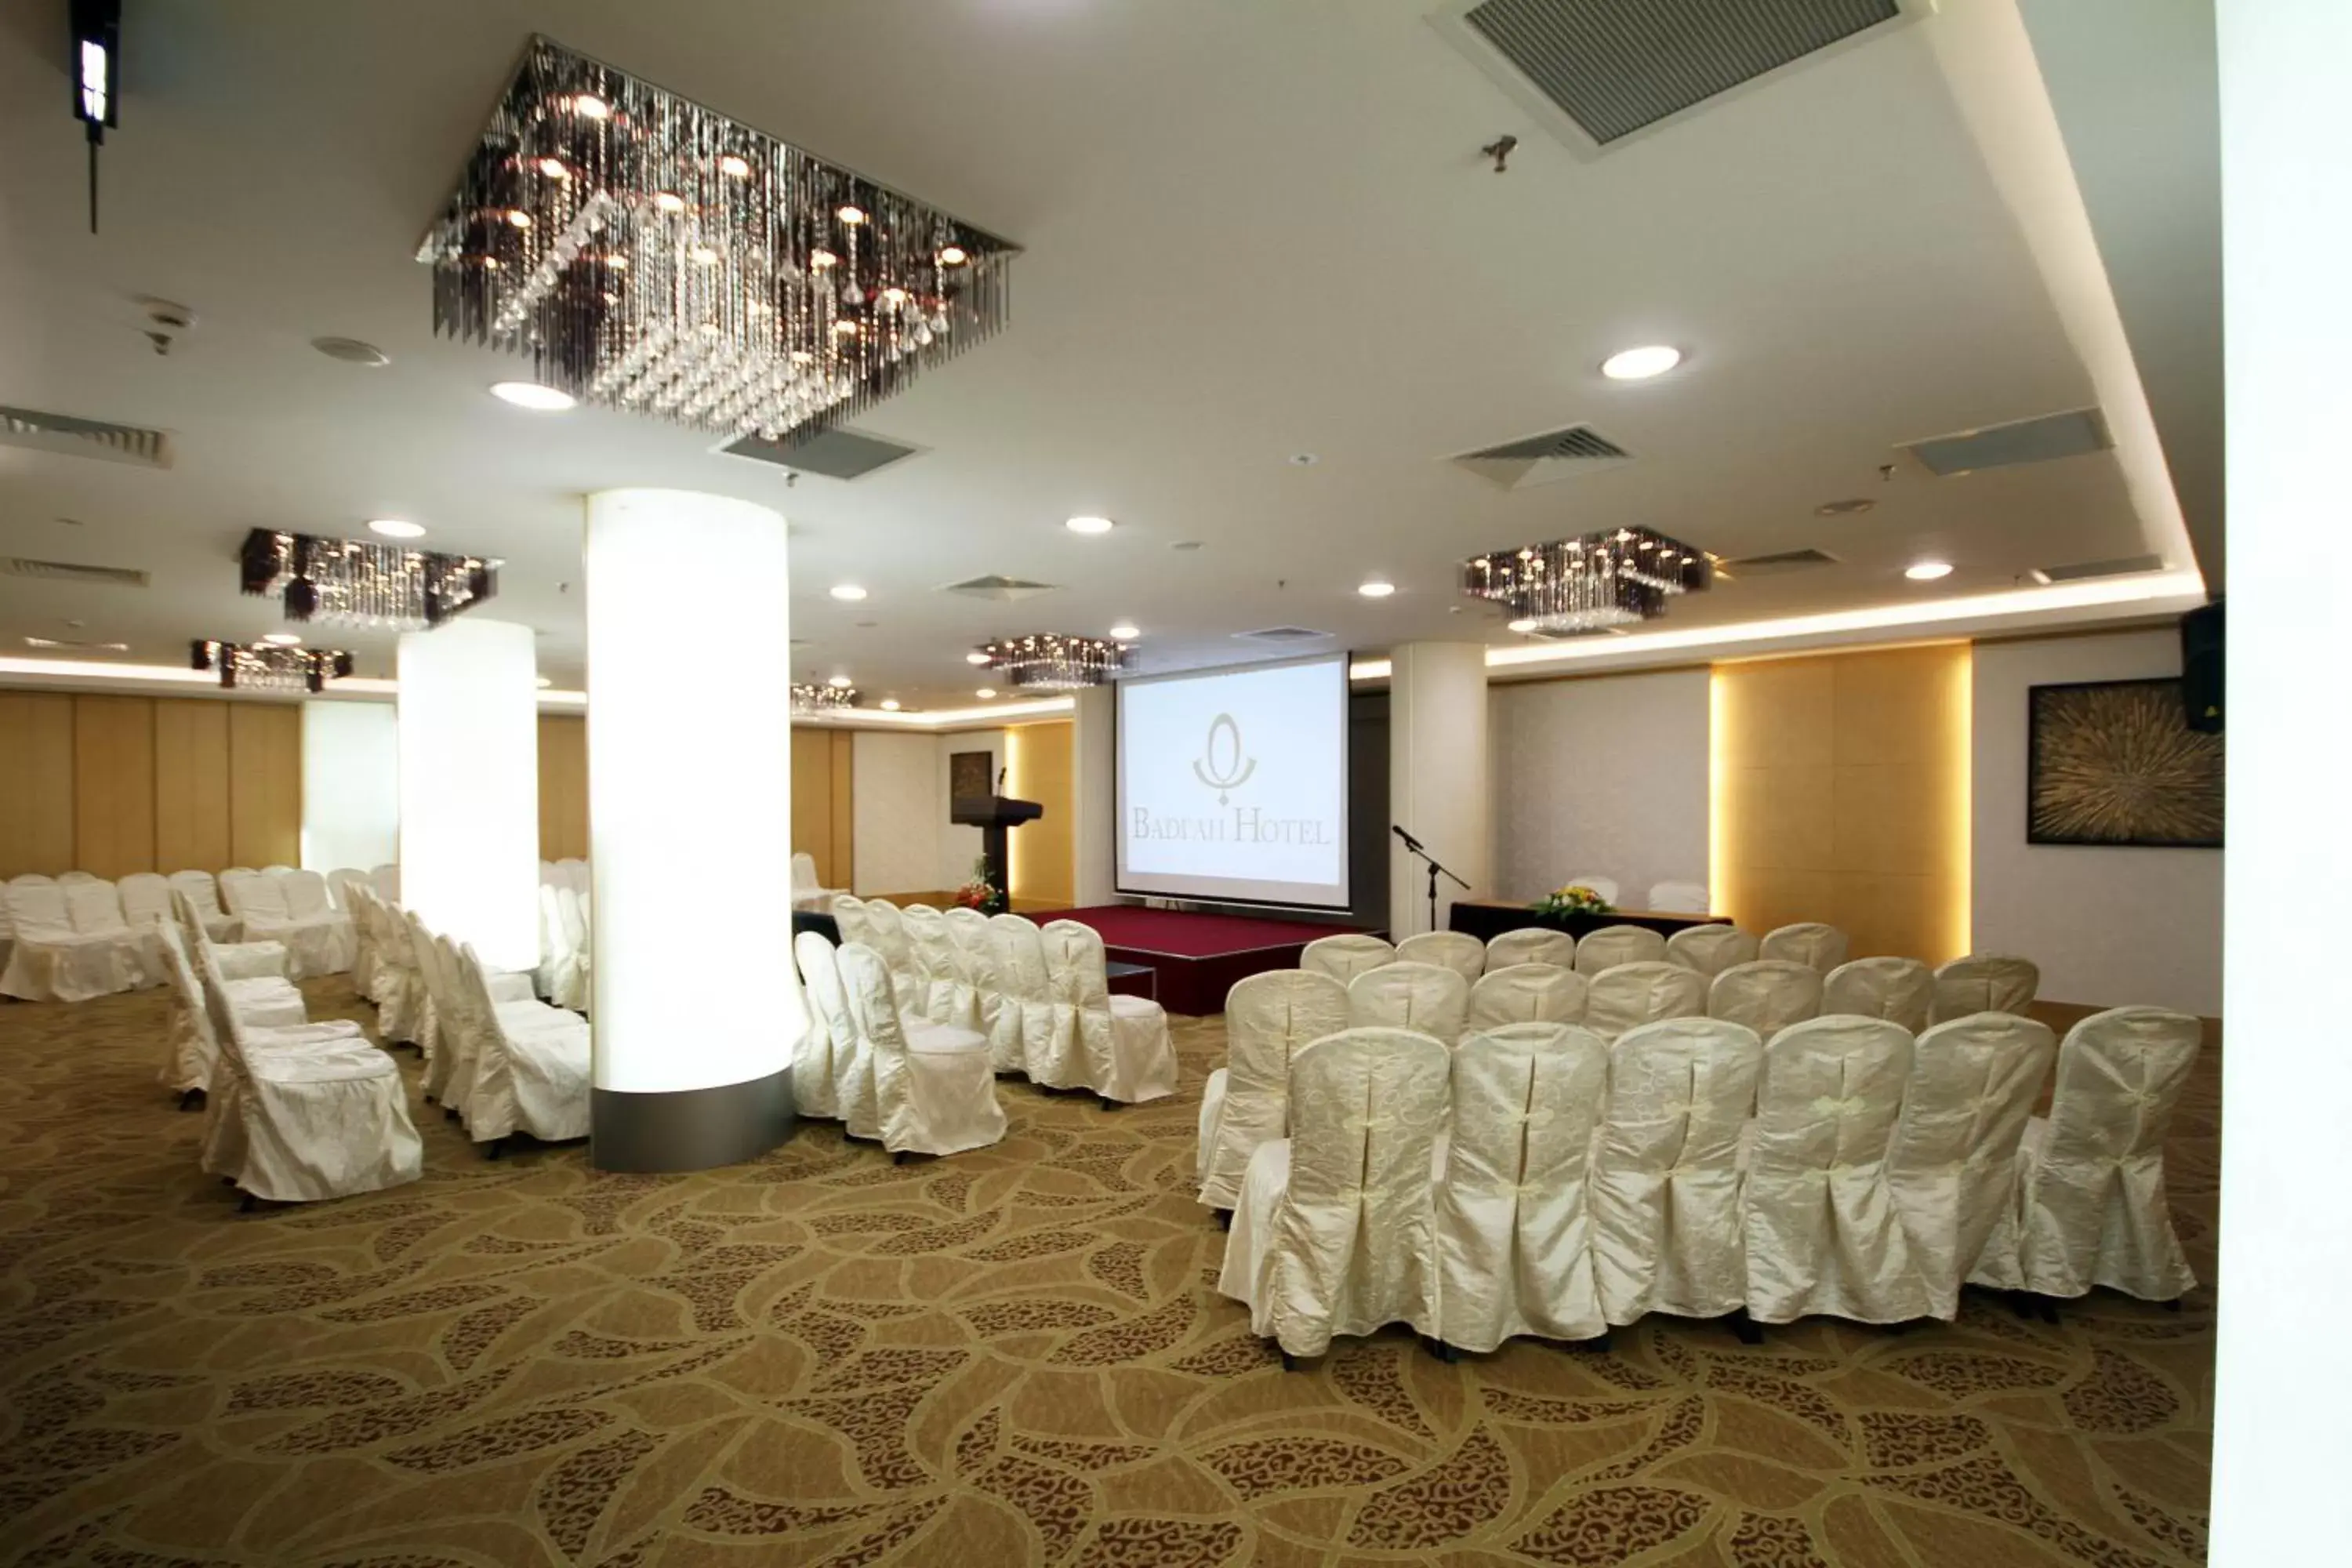 Banquet/Function facilities, Banquet Facilities in Badi'ah Hotel